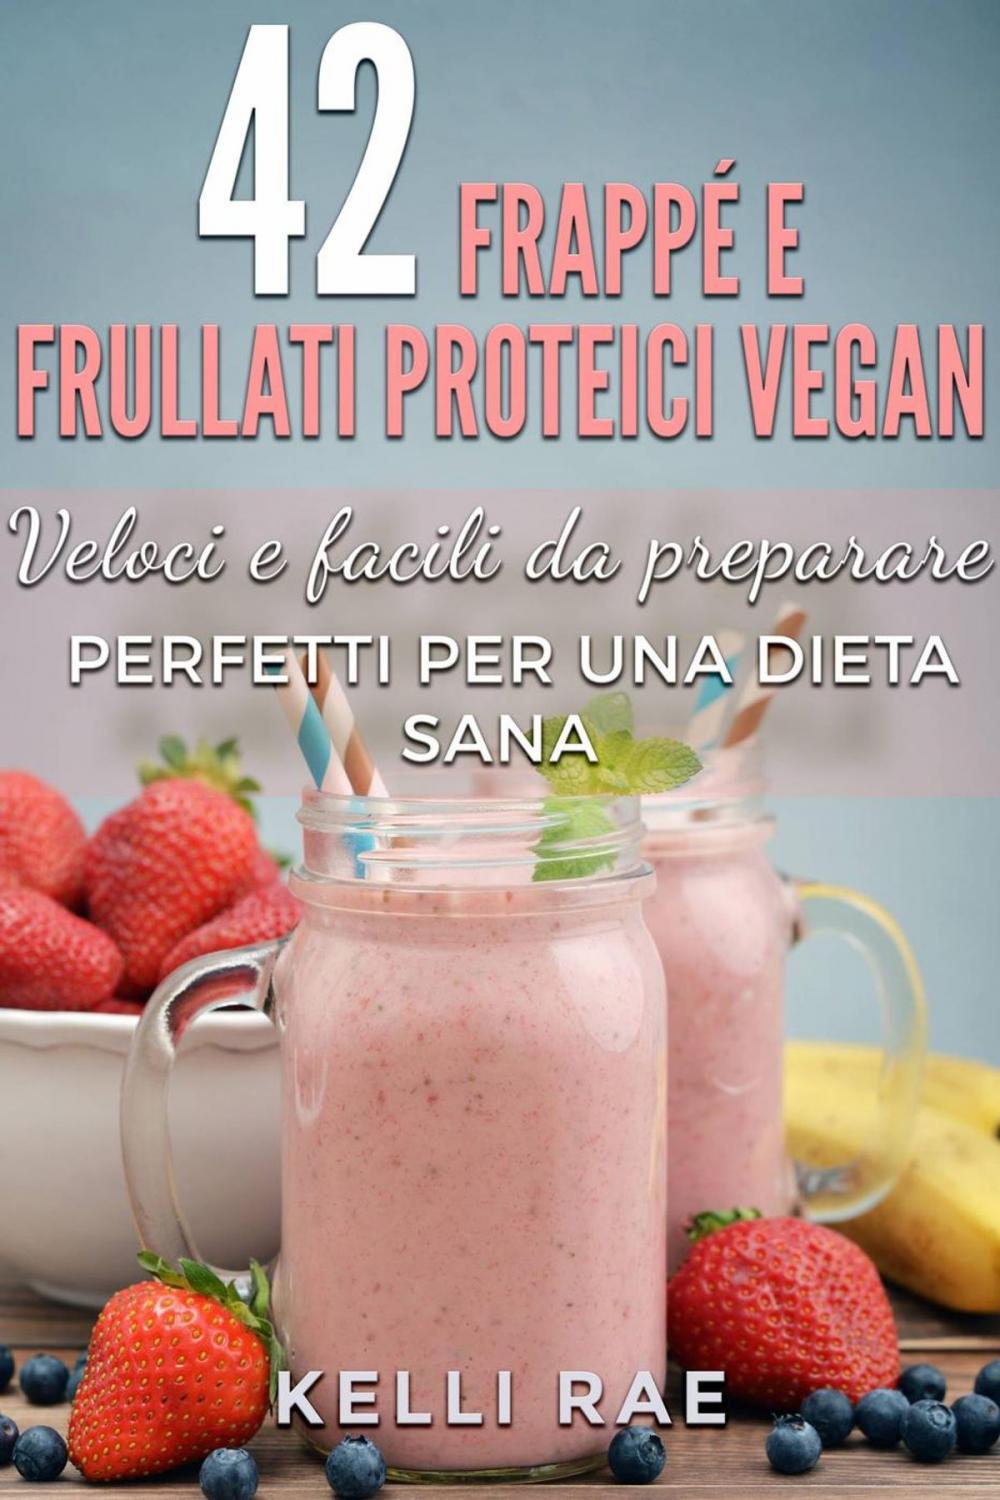 Big bigCover of 42 Frappé e Frullati Proteici Vegan - Veloci e facili da preparare. Perfetti per una dieta sana